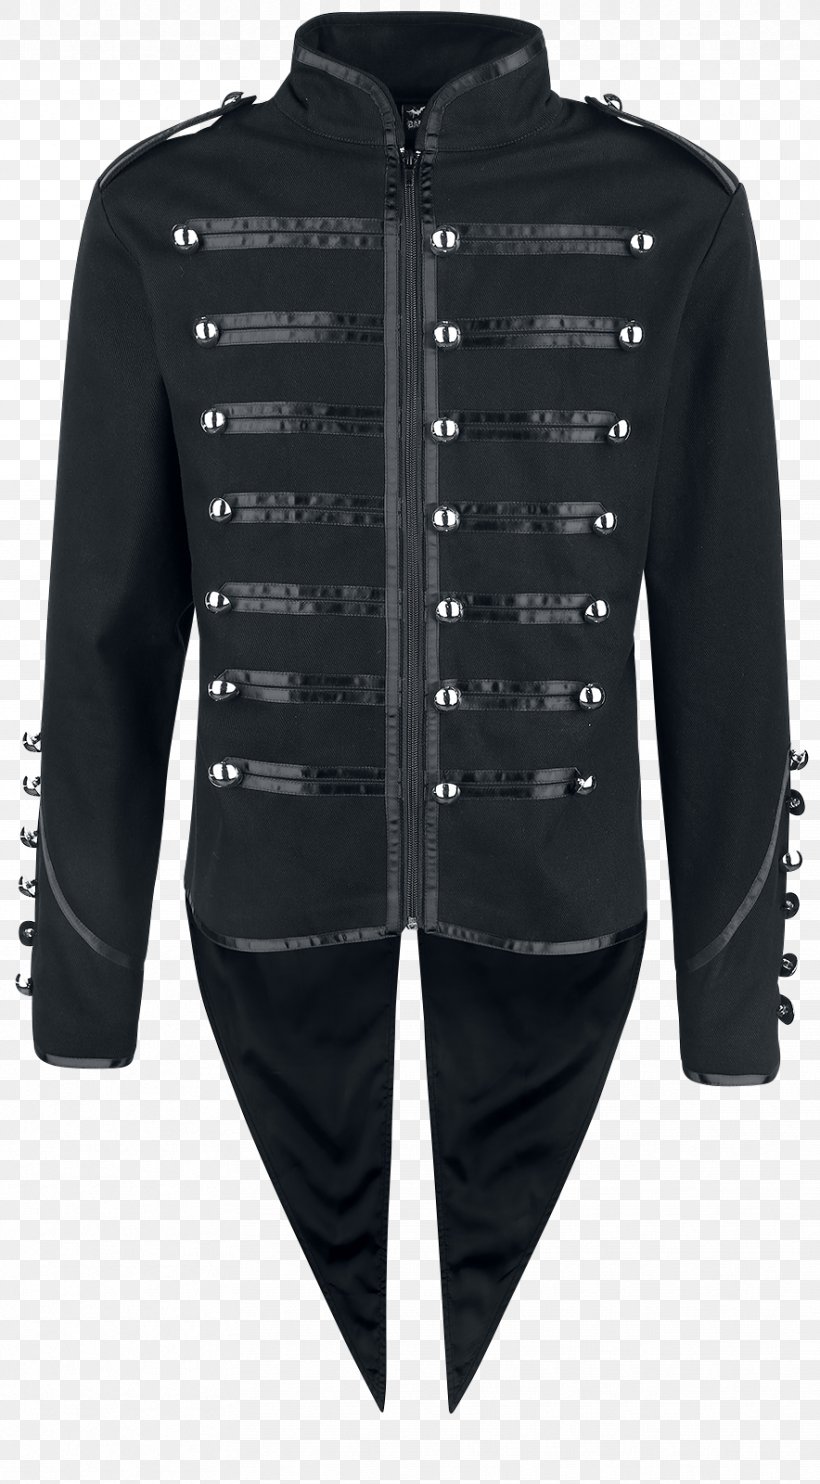 Hoodie Jacket Clothing Waistcoat Uniform, PNG, 884x1600px, Hoodie, Black, Clothing, Coat, Drummer Download Free